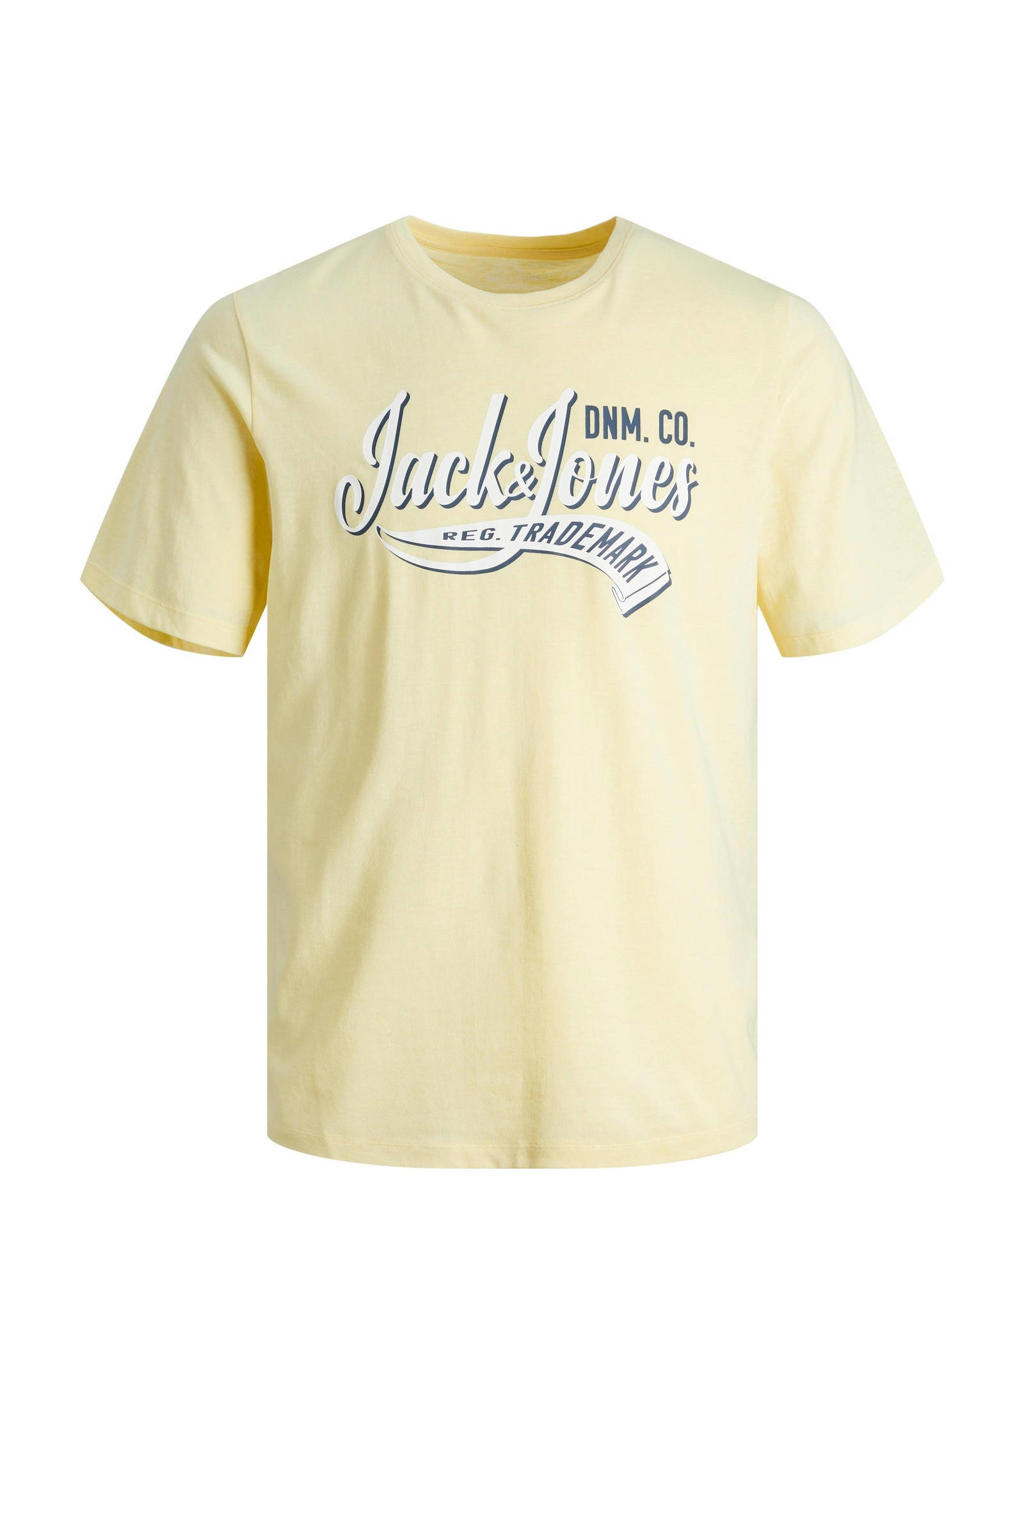 Gele jongens JACK & JONES JUNIOR T-shirt van biologisch katoen met tekst print, korte mouwen en ronde hals